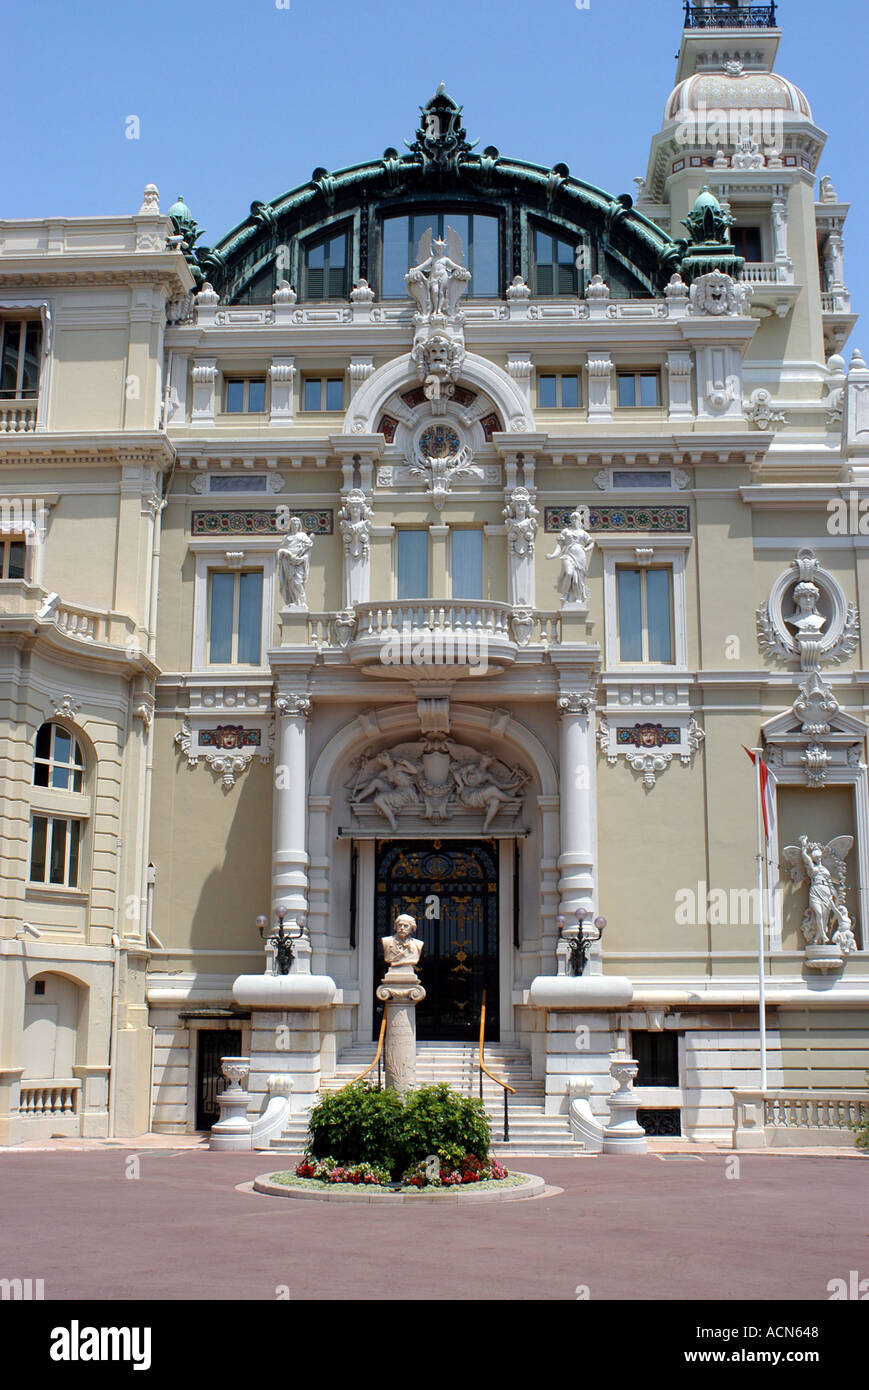 The Monte Carlo Casino in the tax-free principality of Monaco Stock Photo